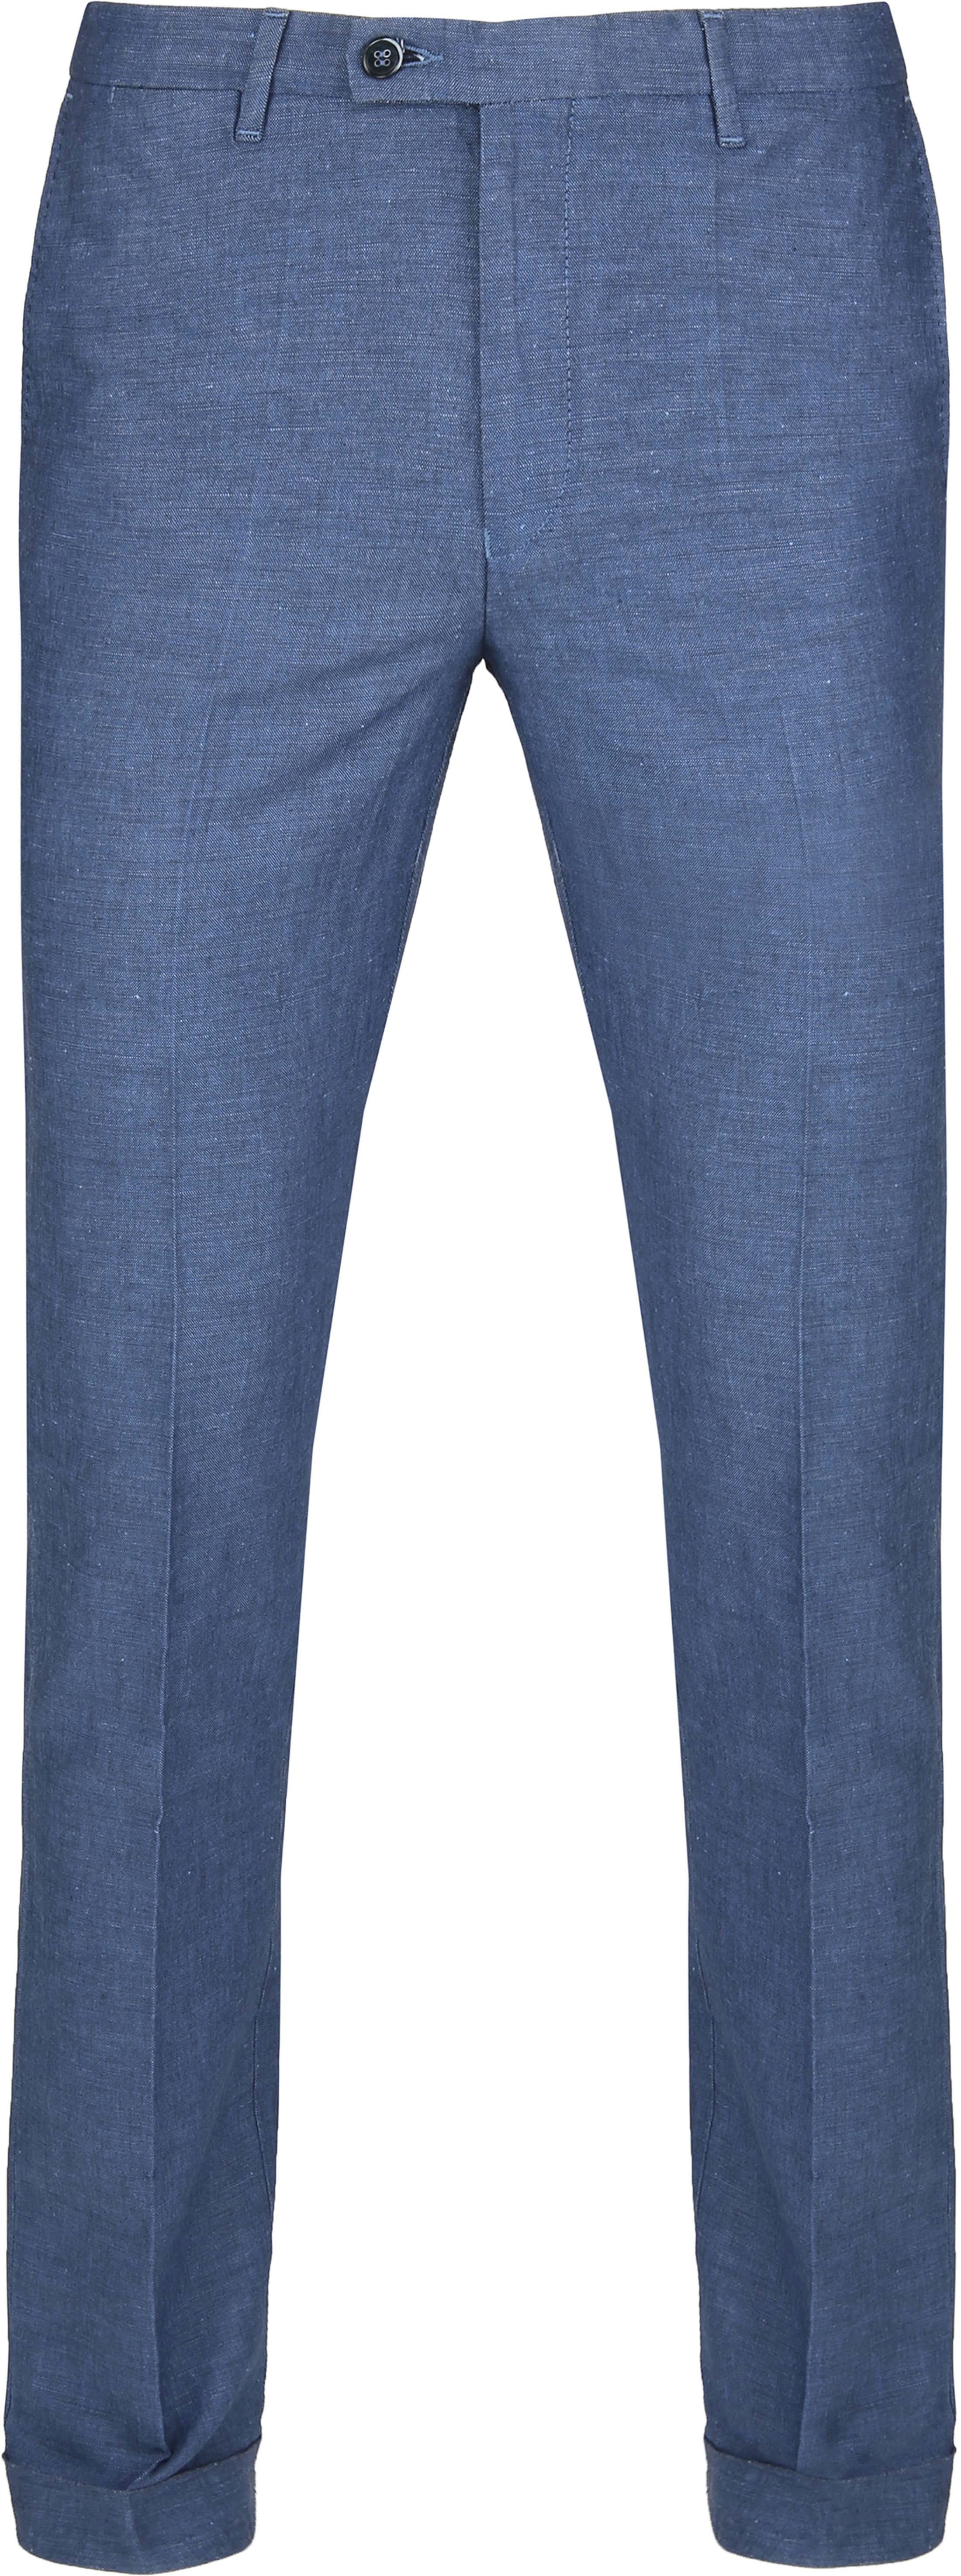 Suitable Pantalon Pisa Melange Blue size 36-R